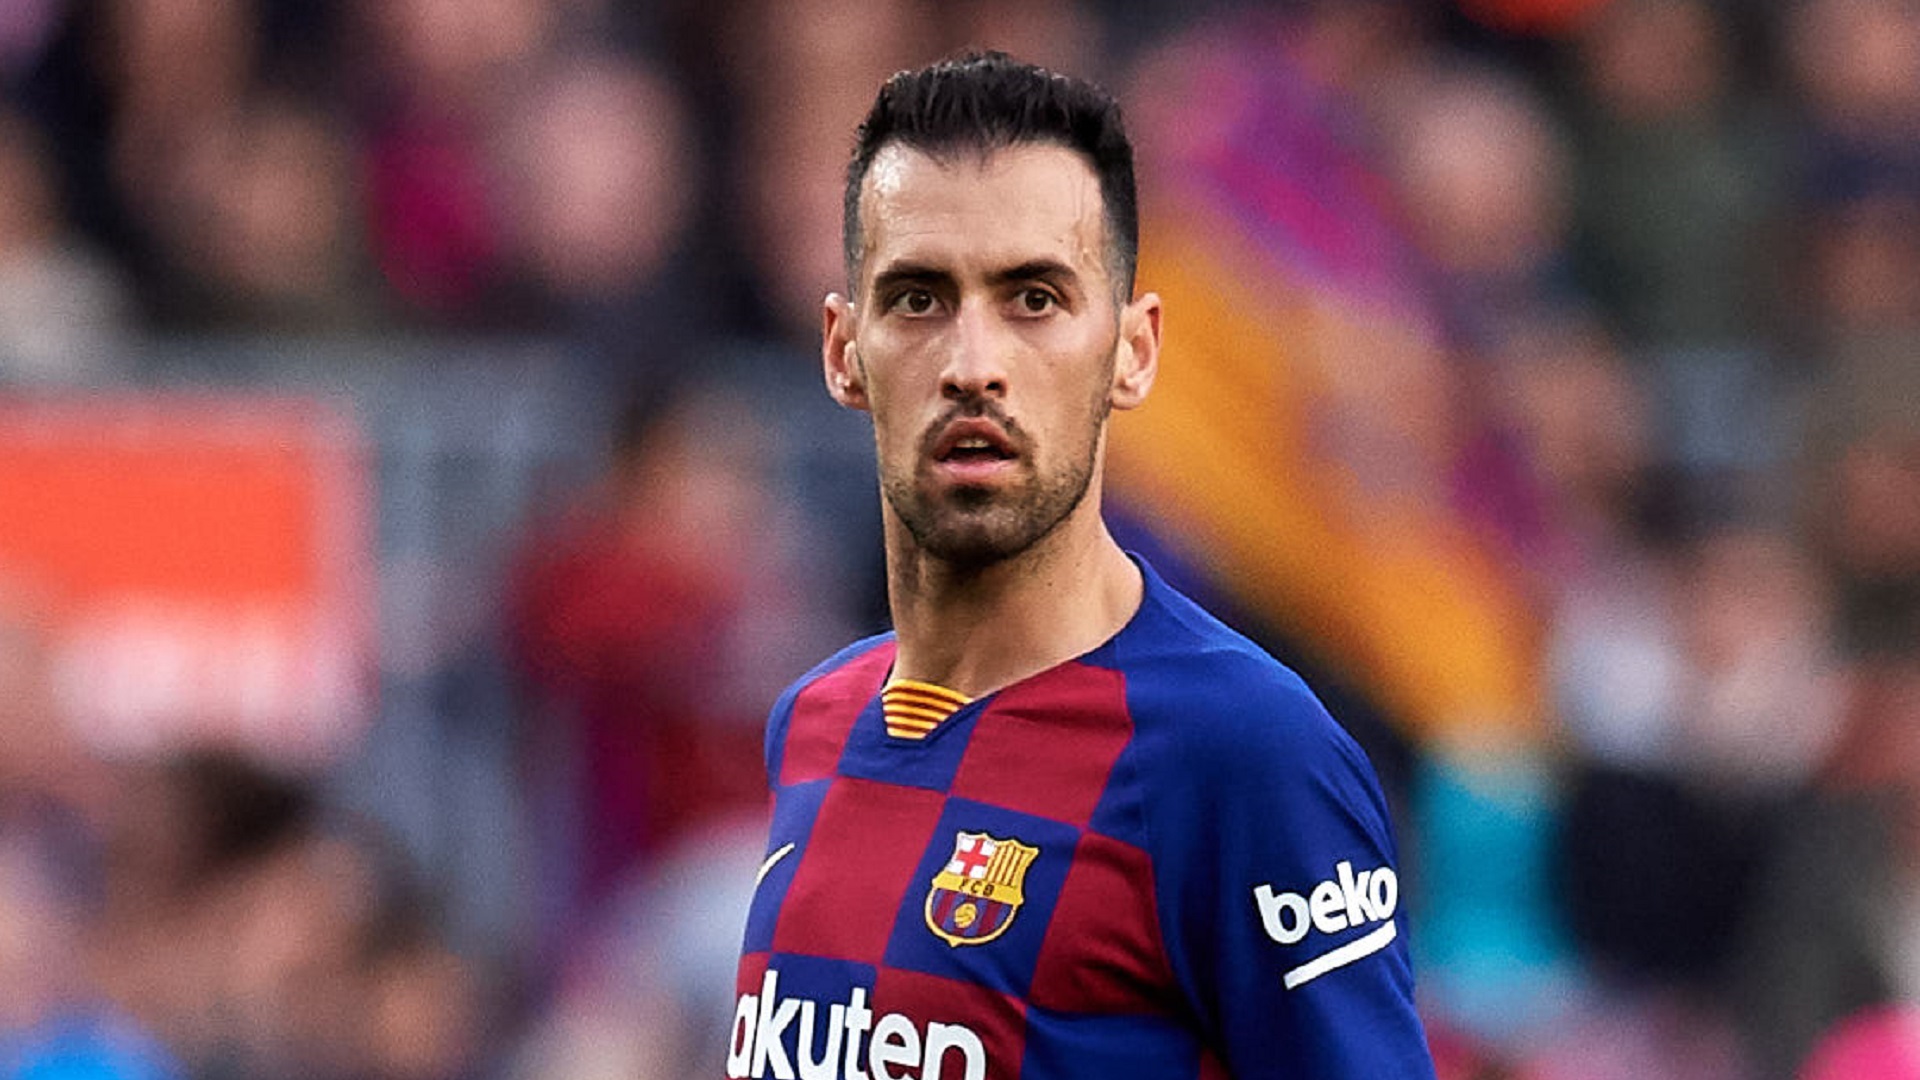 Sergio Busquets réagit au début phénoménal du Barça en 2021